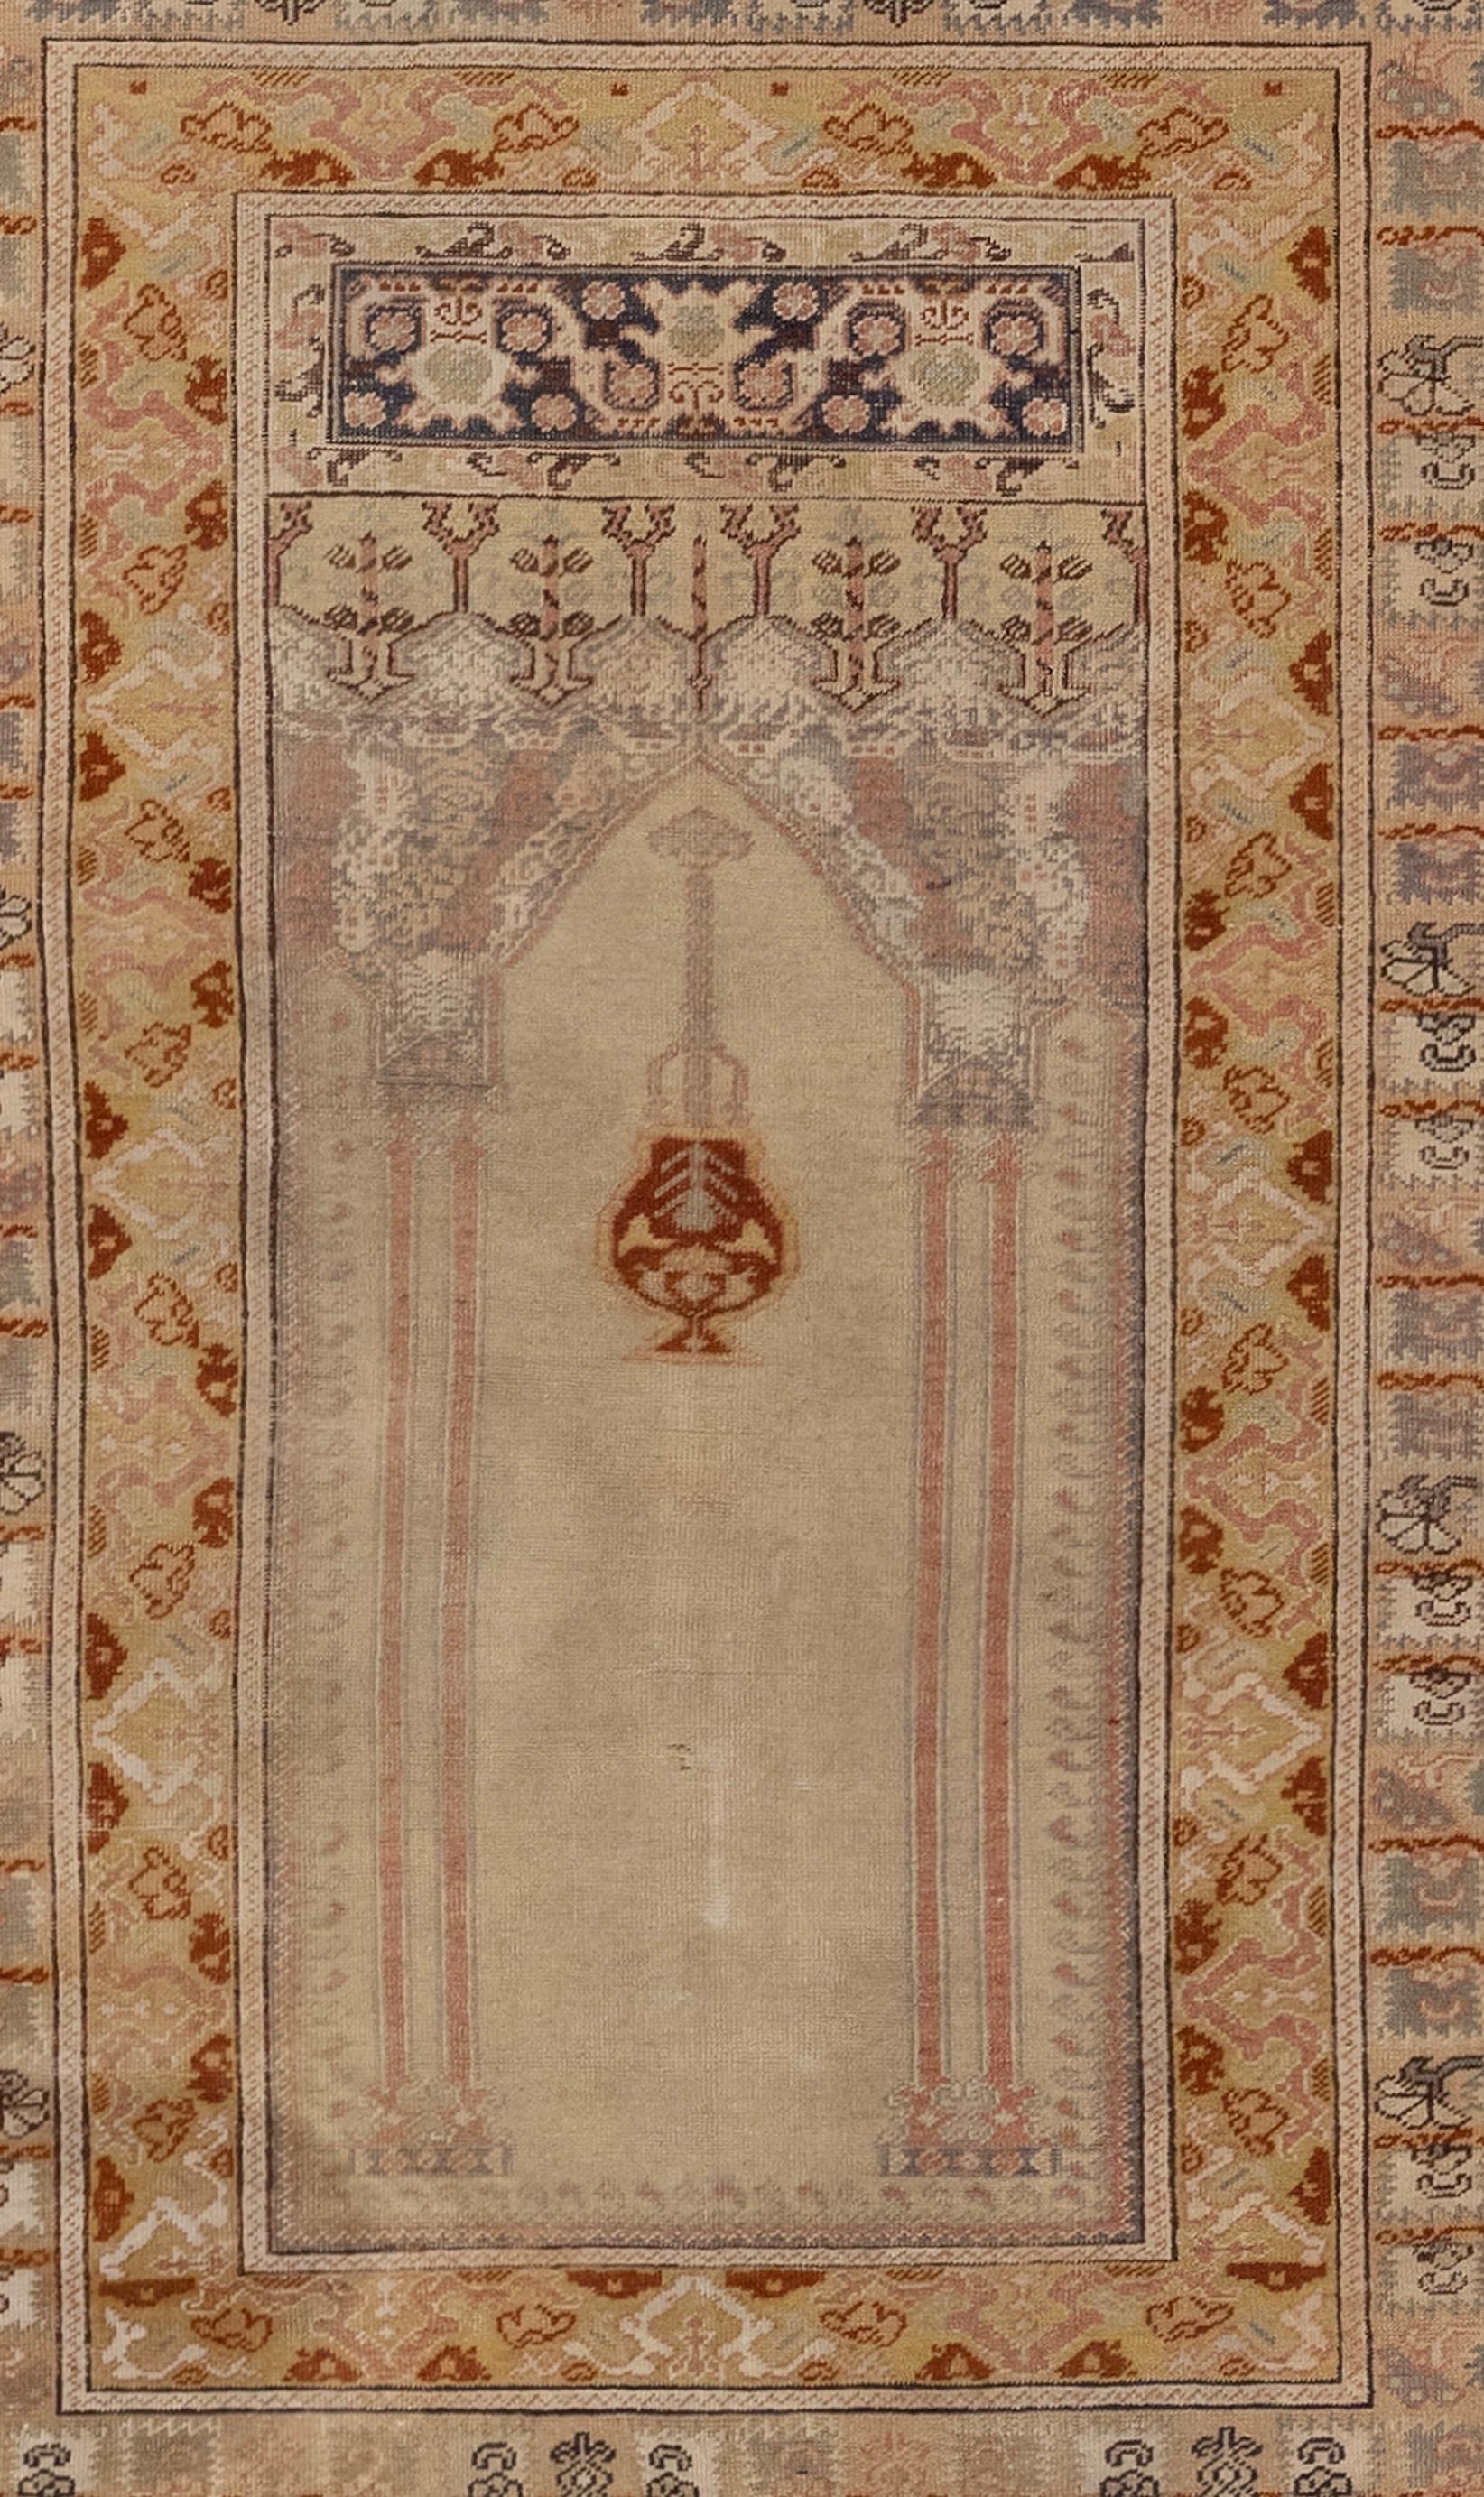 Un ancien tapis de prière turc Kaiseri des années 1900. Il se compose d'une soie finement tissée dans le style turc et d'un champ écru. Le tapis a un dessus festonné avec une lampe de mosquée et deux colonnes ornementales soutenant un profond